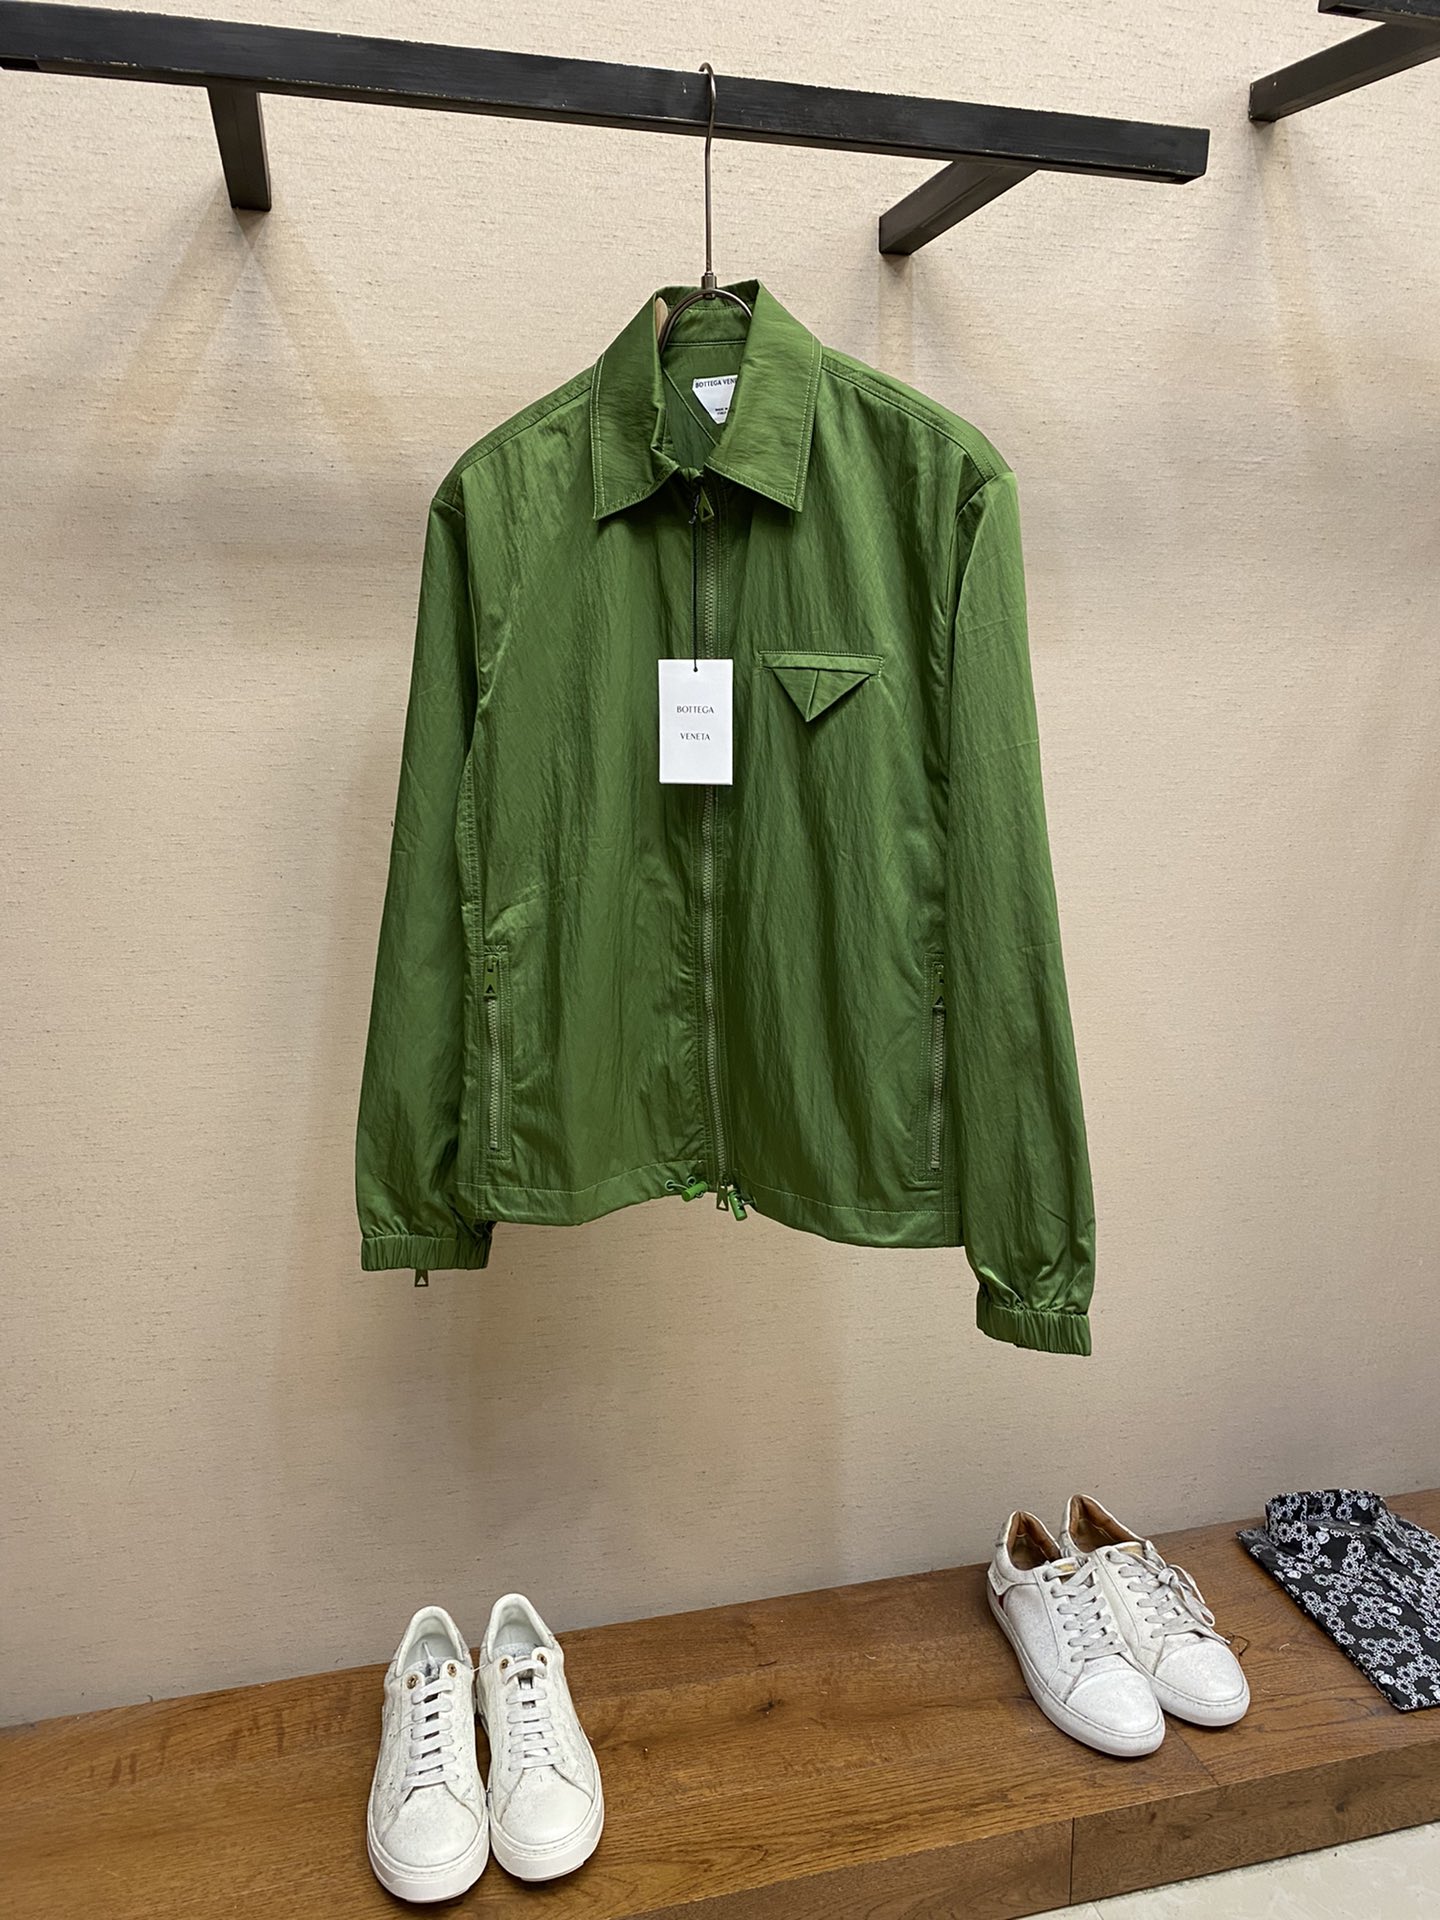 PsddyyeBottega Veneta三角口袋饰拉链防风夹克这款夹克选用防风面料呈现出经典版型，整体廓形利落合身，绿色调摩登率性，三角口袋缀饰更添低调辨识度，瞬间提升都市造型的吸睛指数。尺码：S-XL颜色：绿色，黑色，蓝色